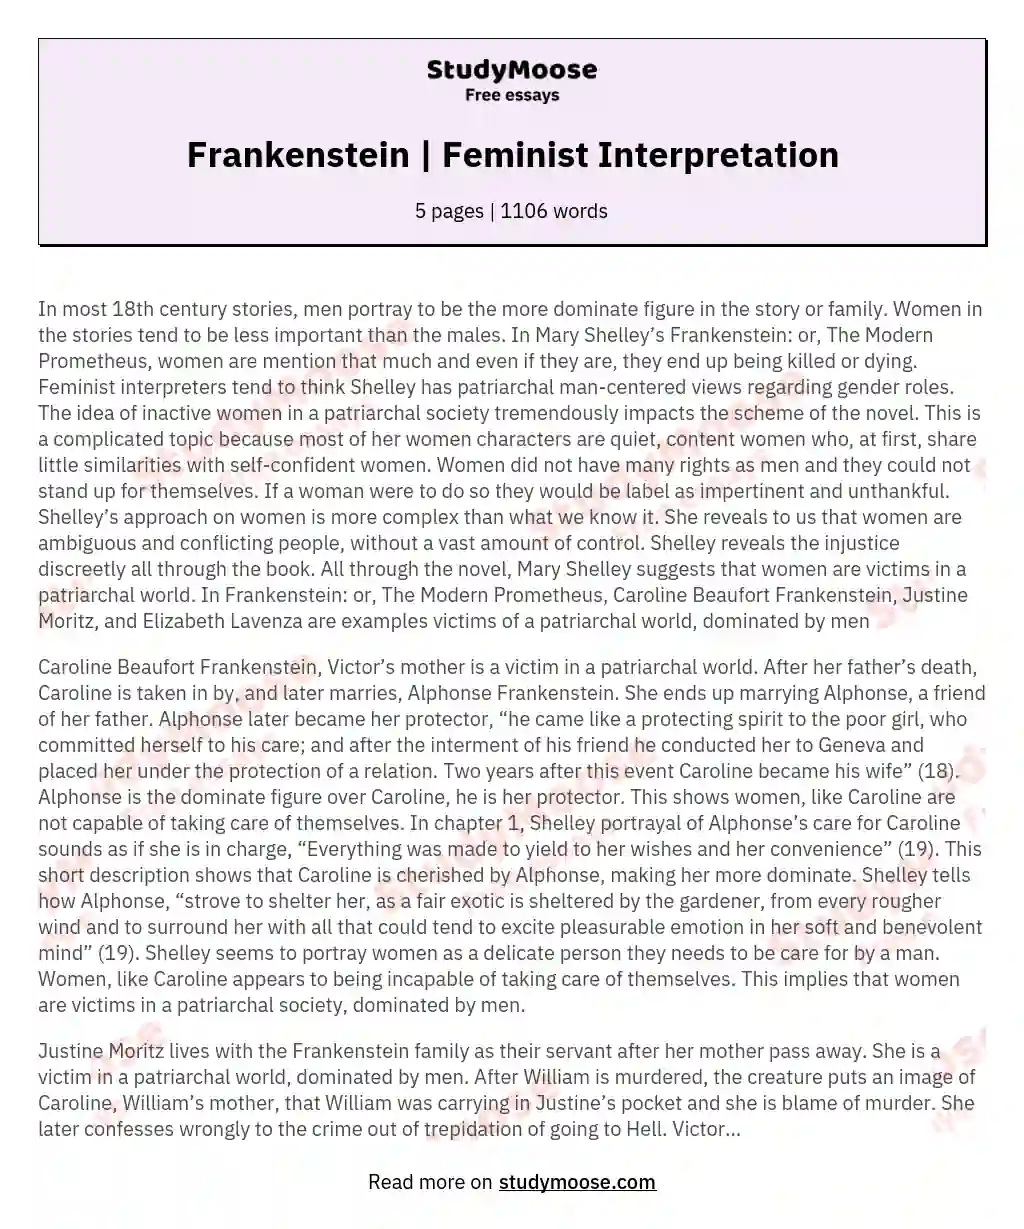 Frankenstein | Feminist Interpretation essay